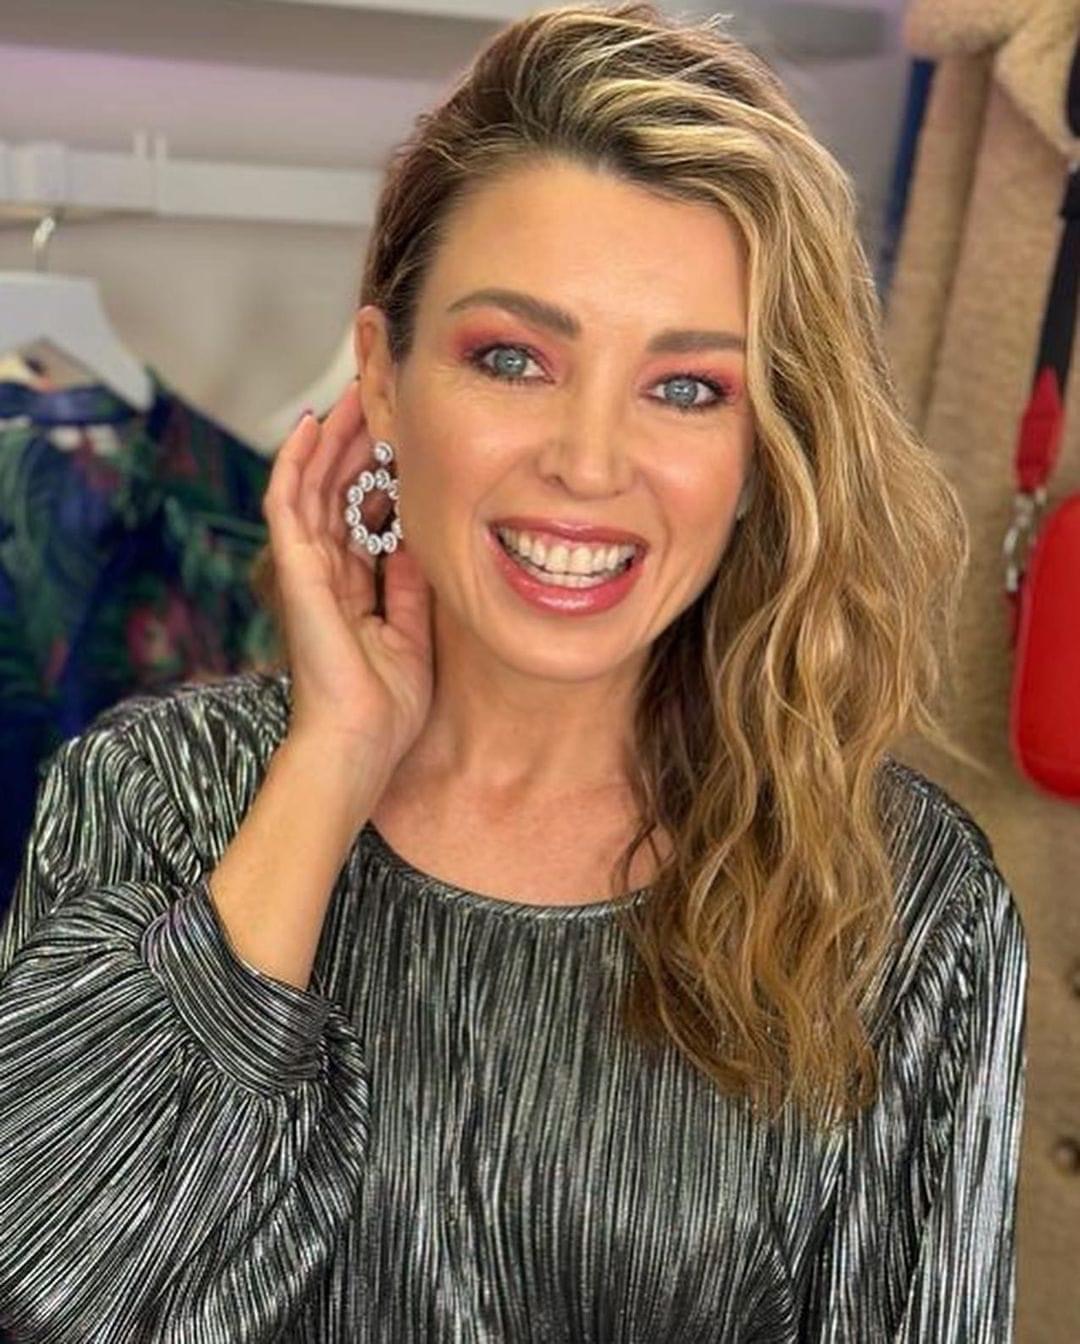 Dannii Minogue earrings Blank Meme Template